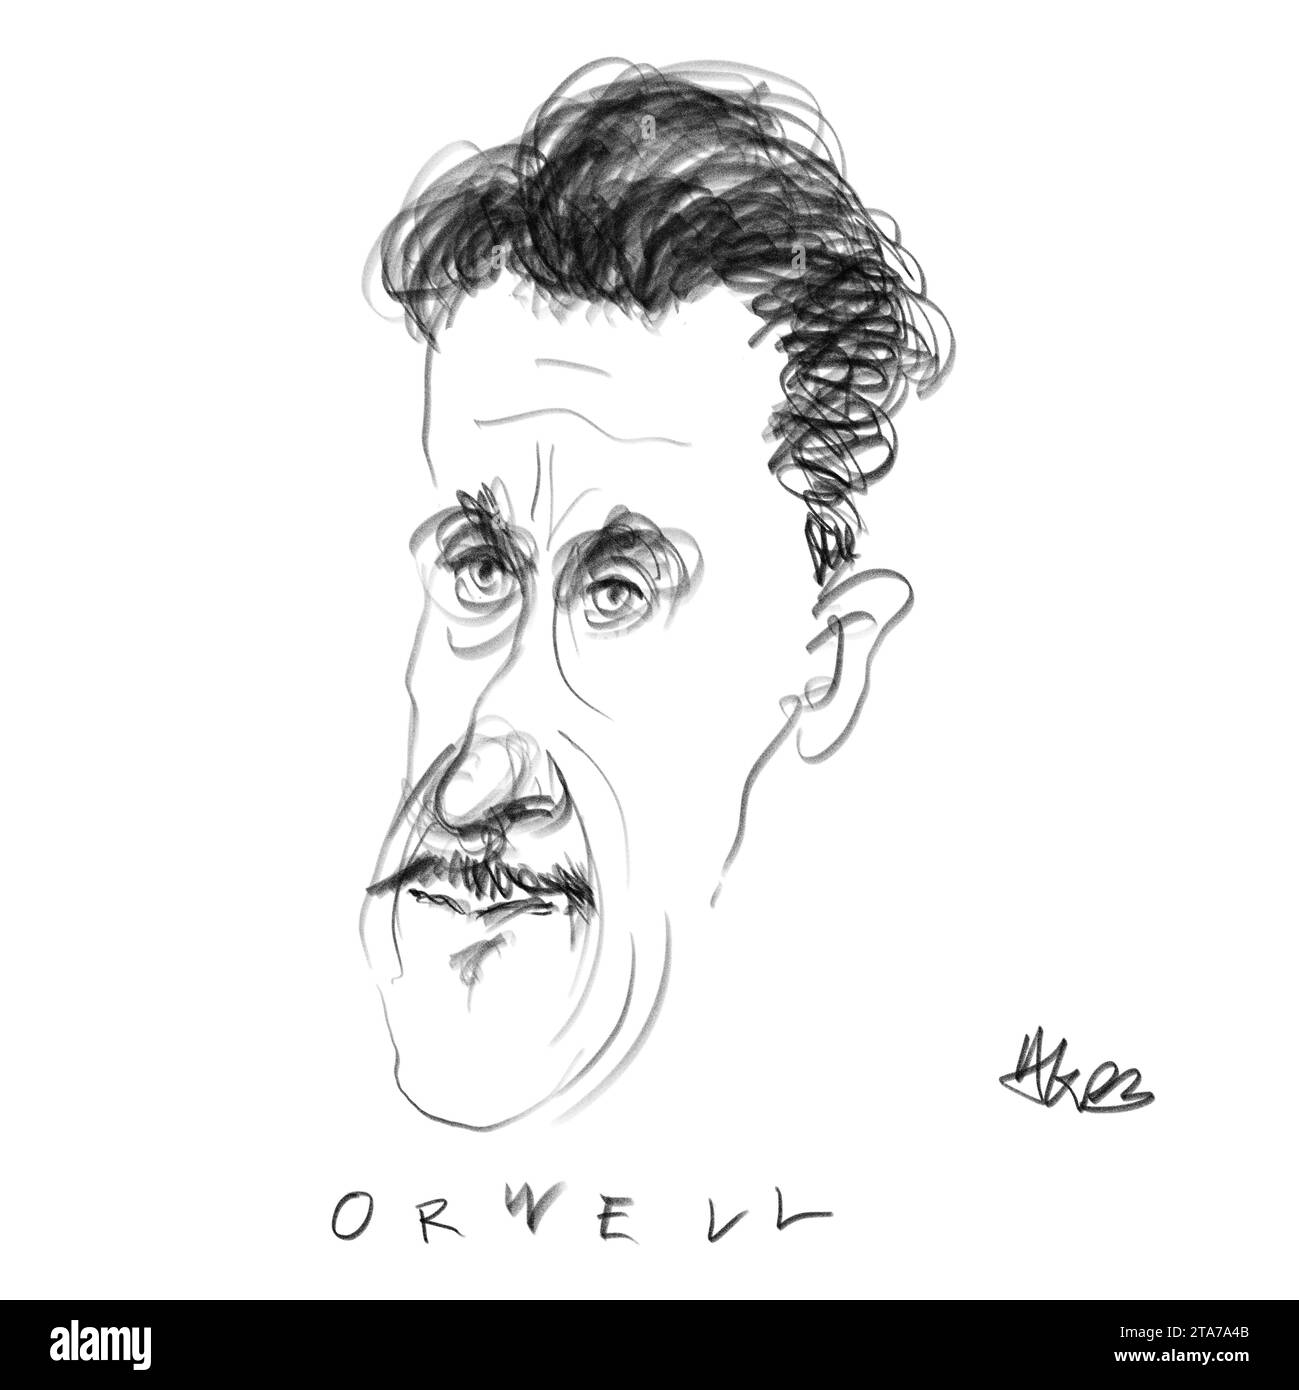 Potrait of the Author Orwell Stock Photo